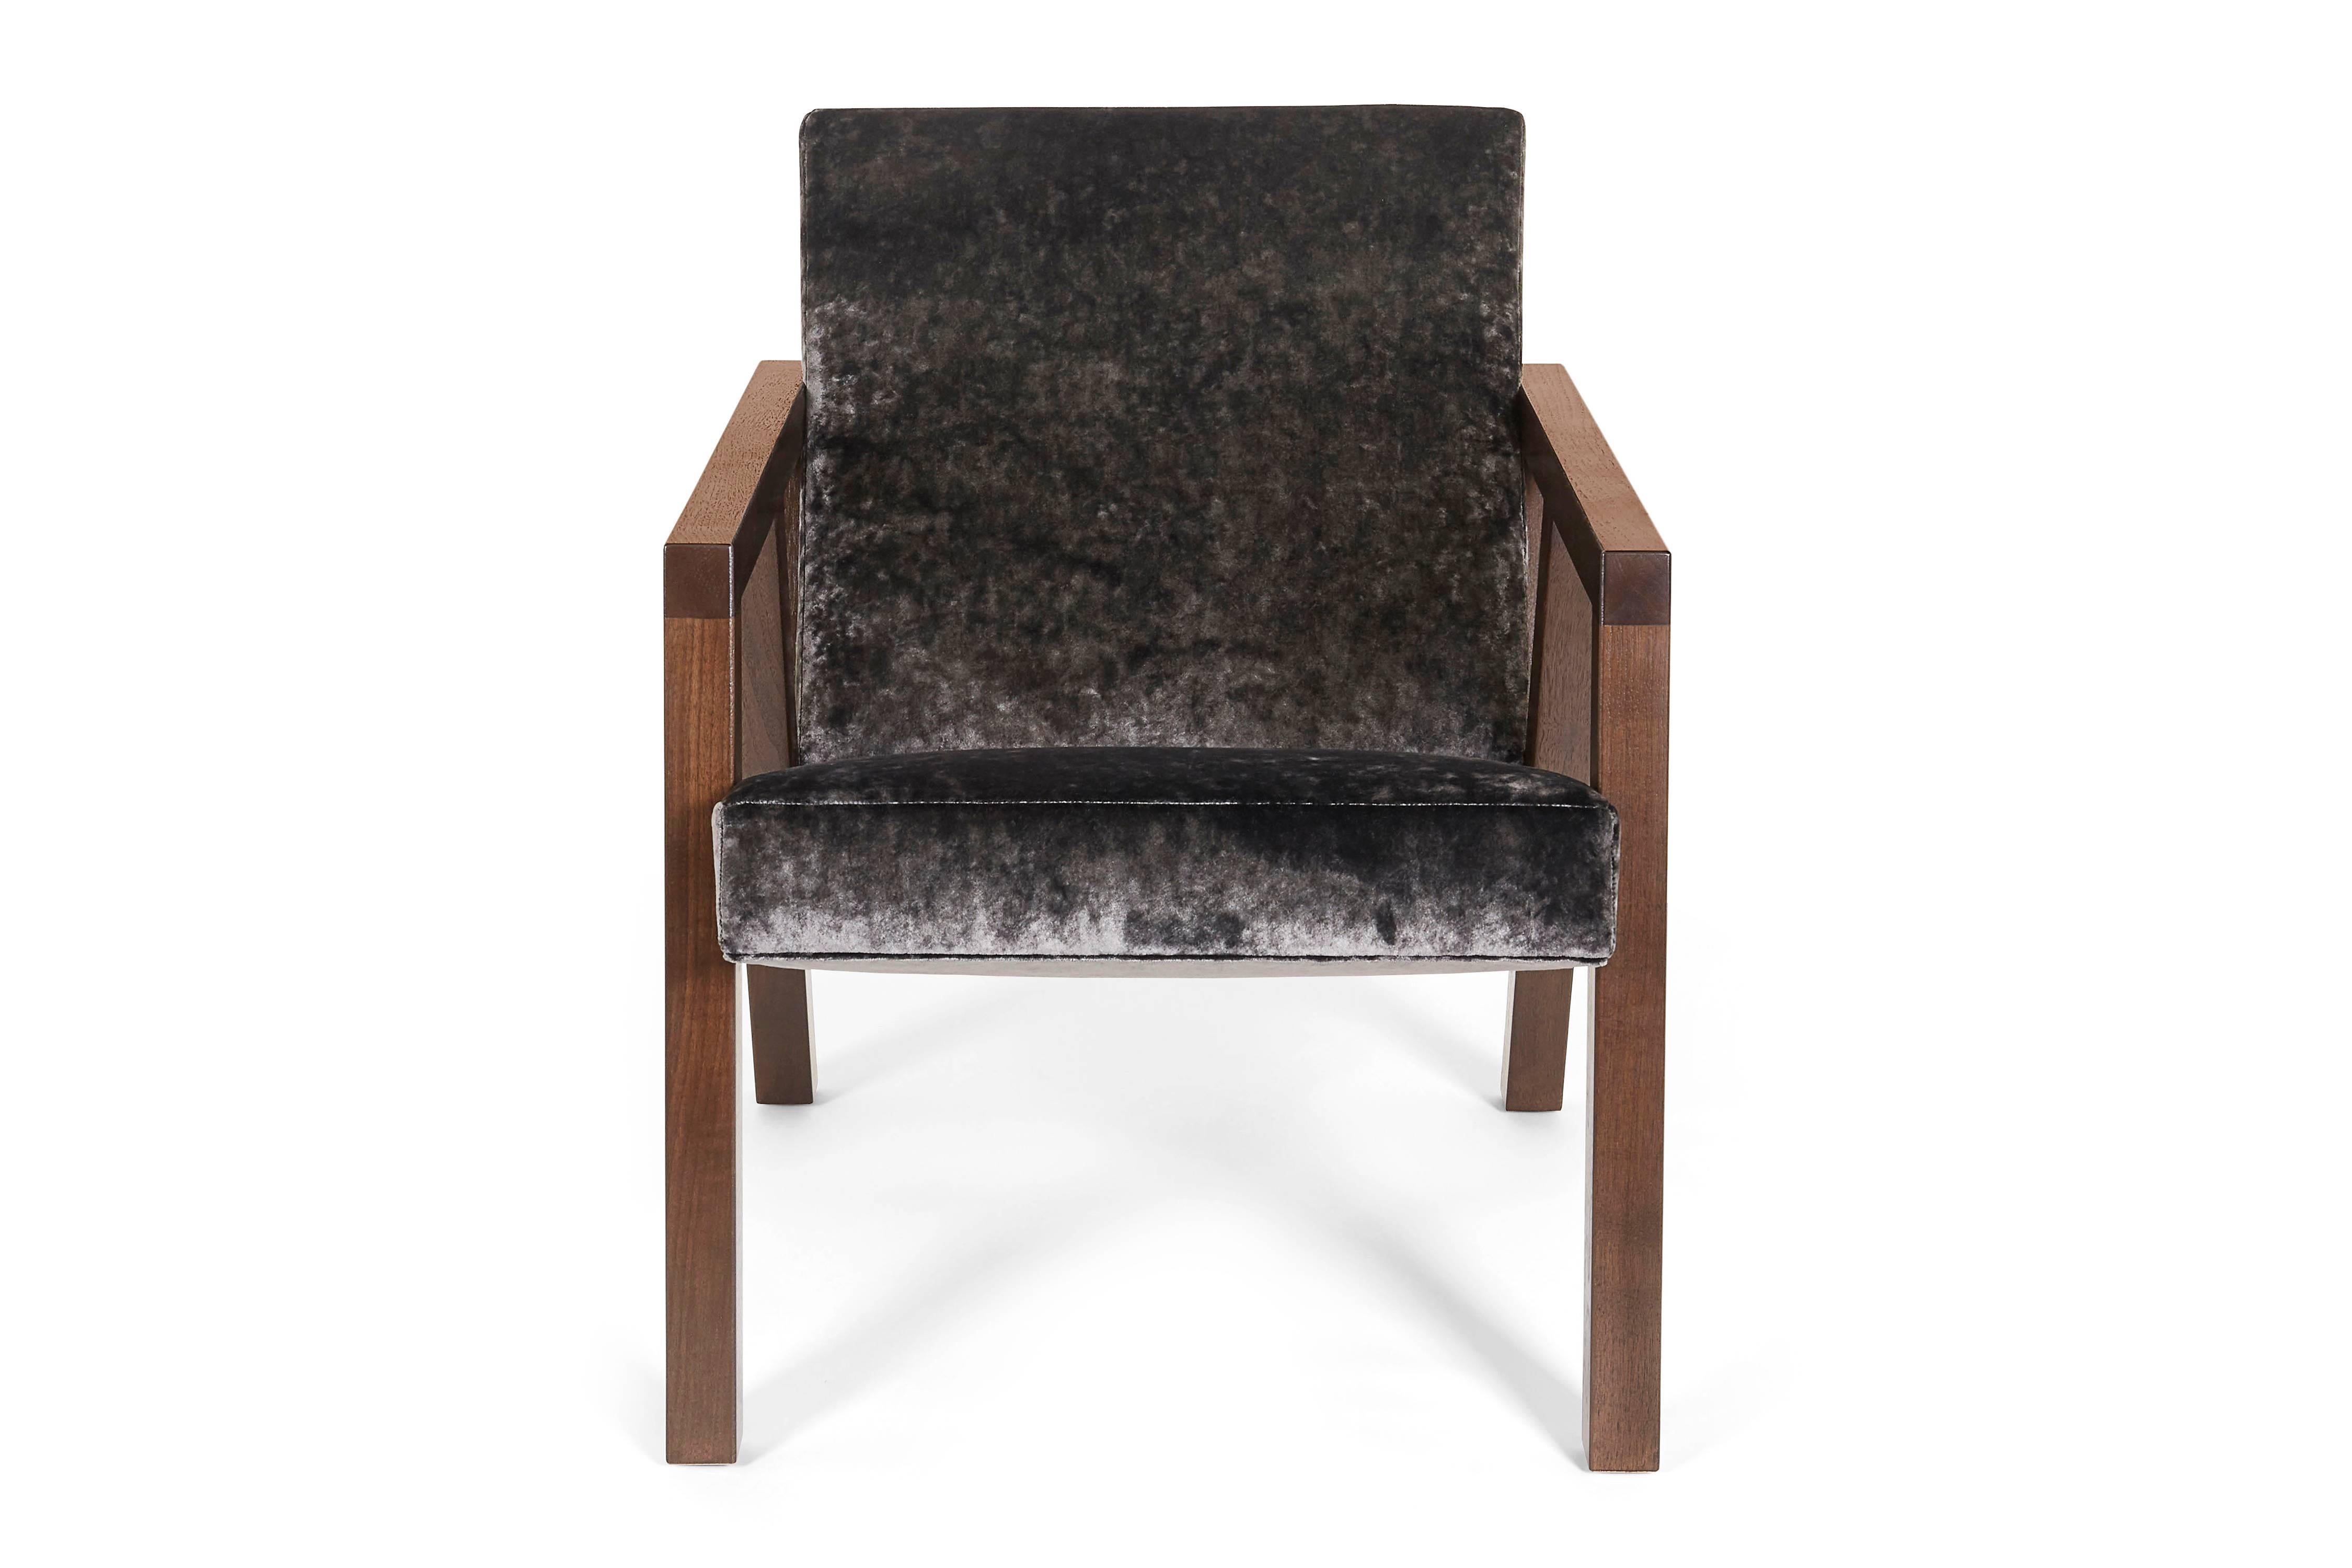 Der moda Stuhl ist zeitlos und modern zugleich. Mit seinen schlanken, kantigen Armen und Beinen aus Walnussholz und dem plüschigen Samtbezug ist er sowohl funktional als auch schick.